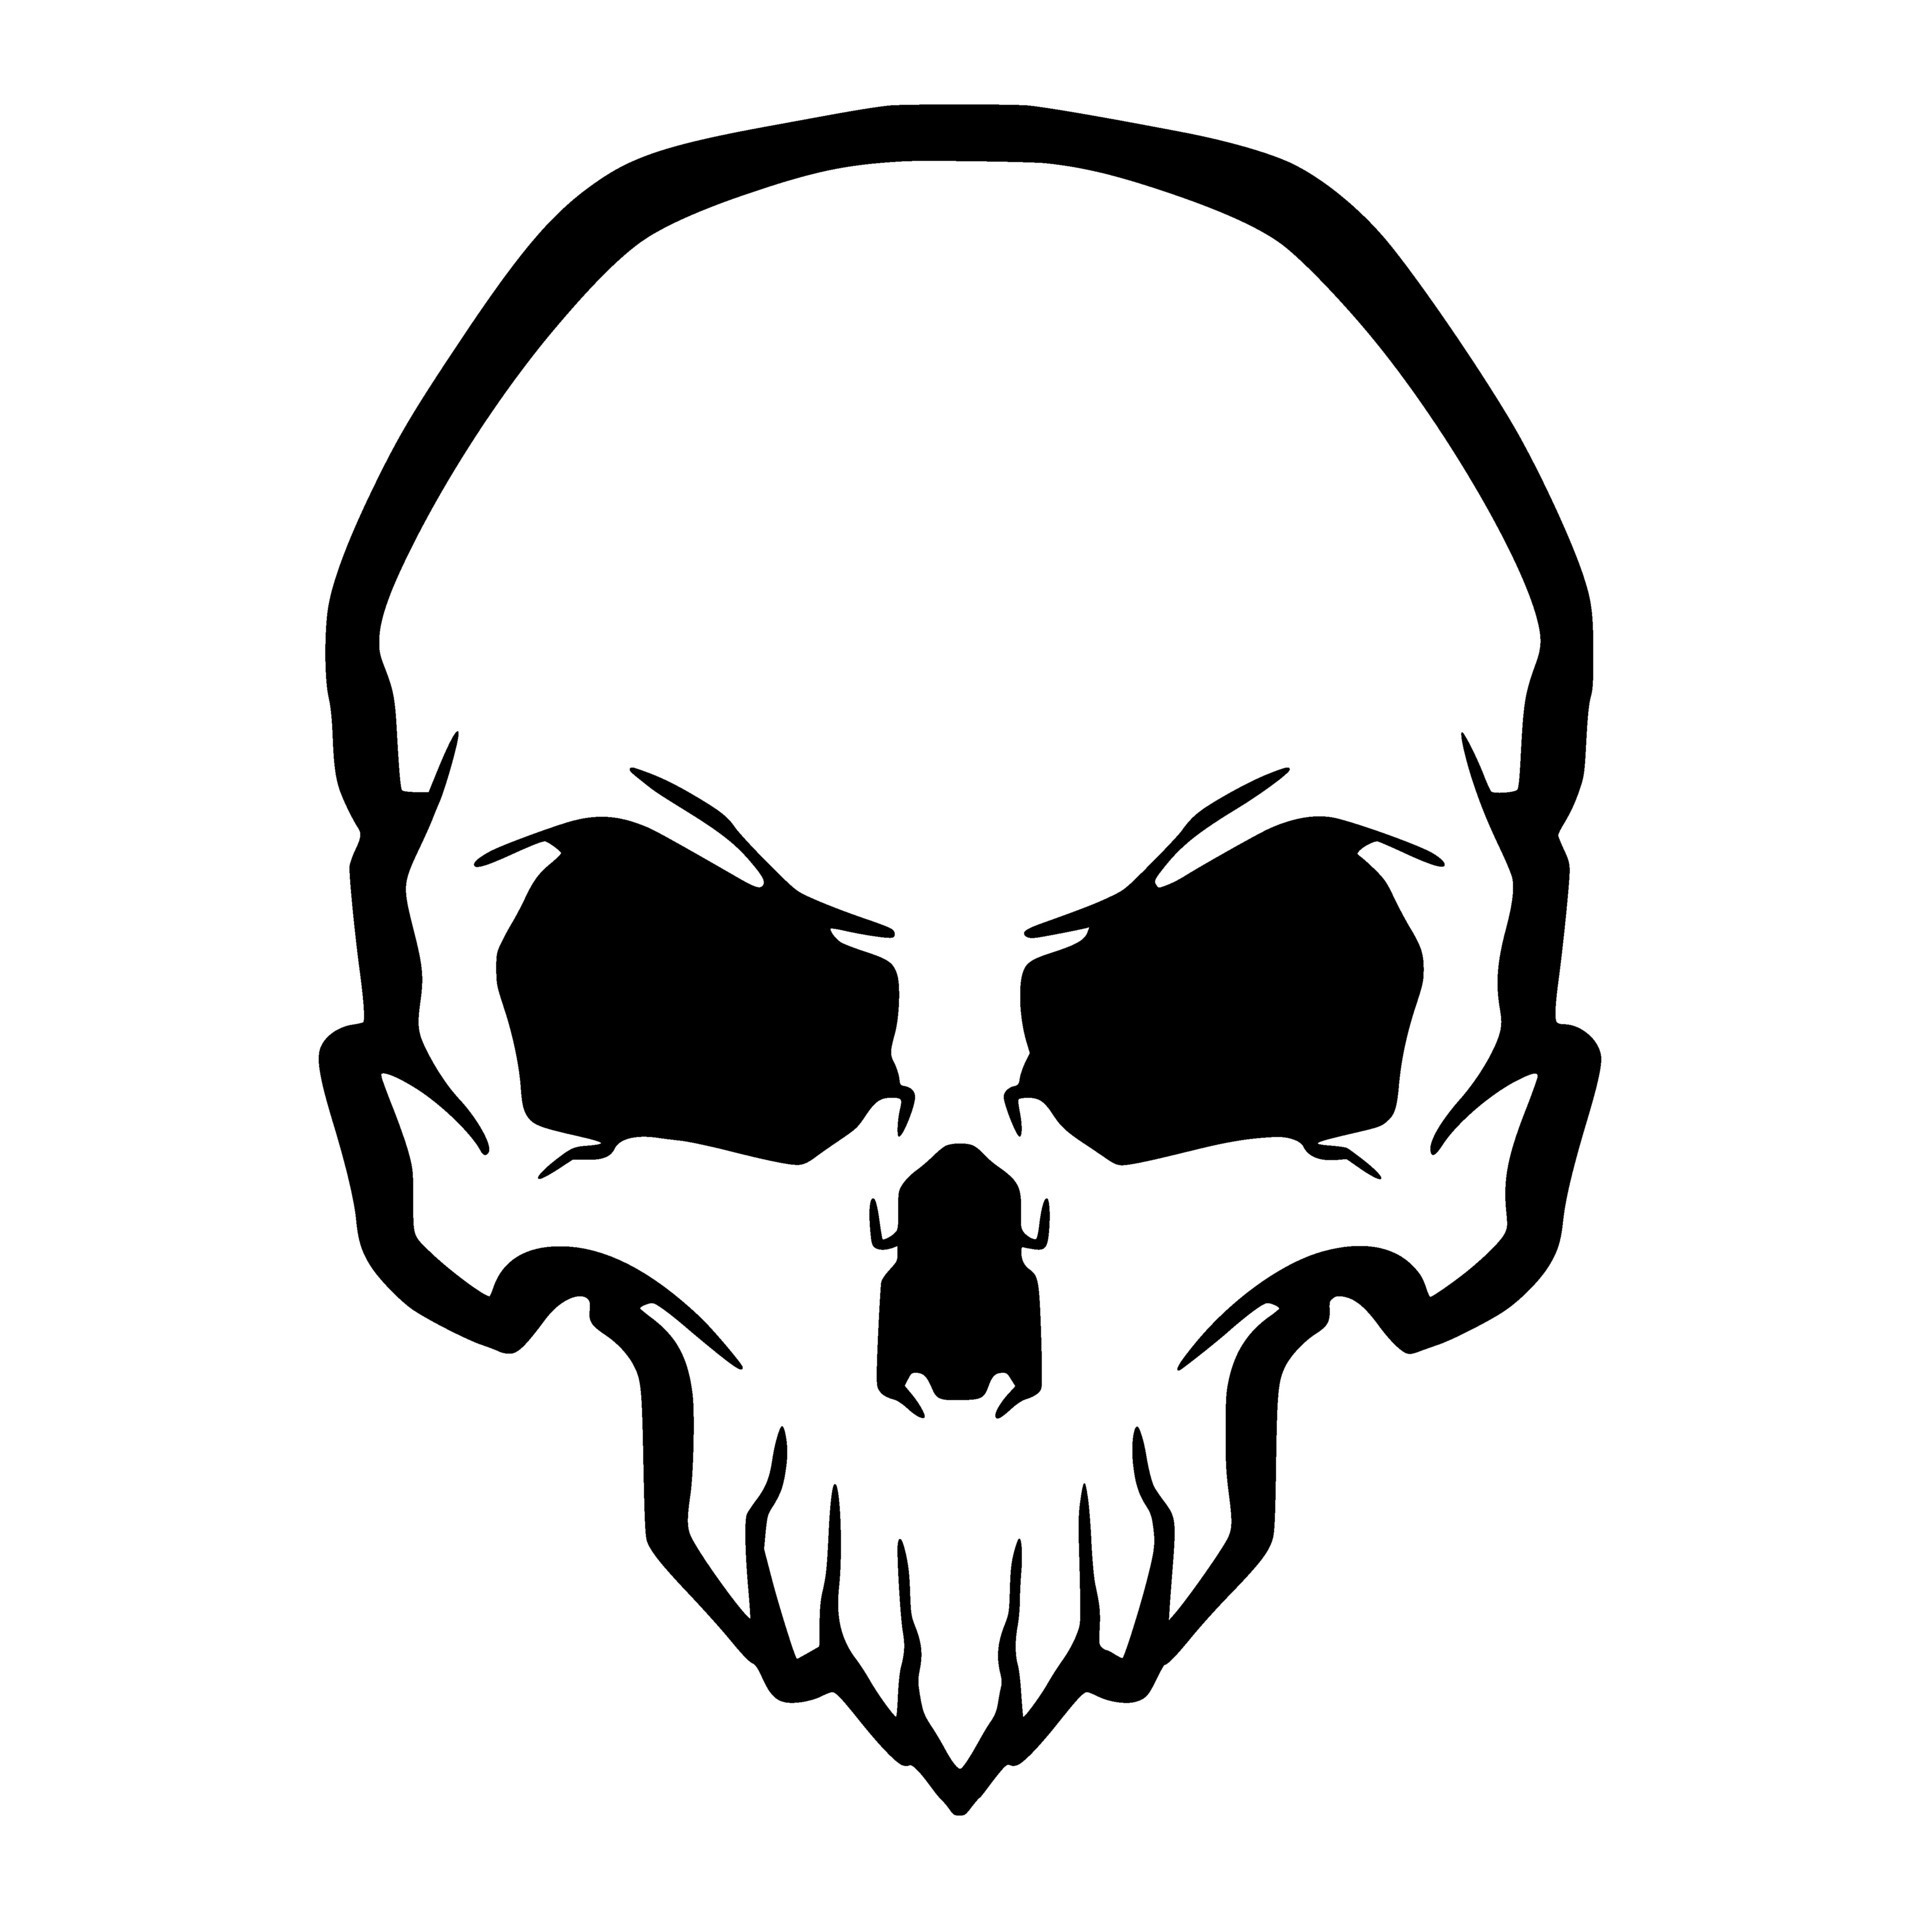 Skull illustration mascot logo 25264685 Vector Art at Vecteezy